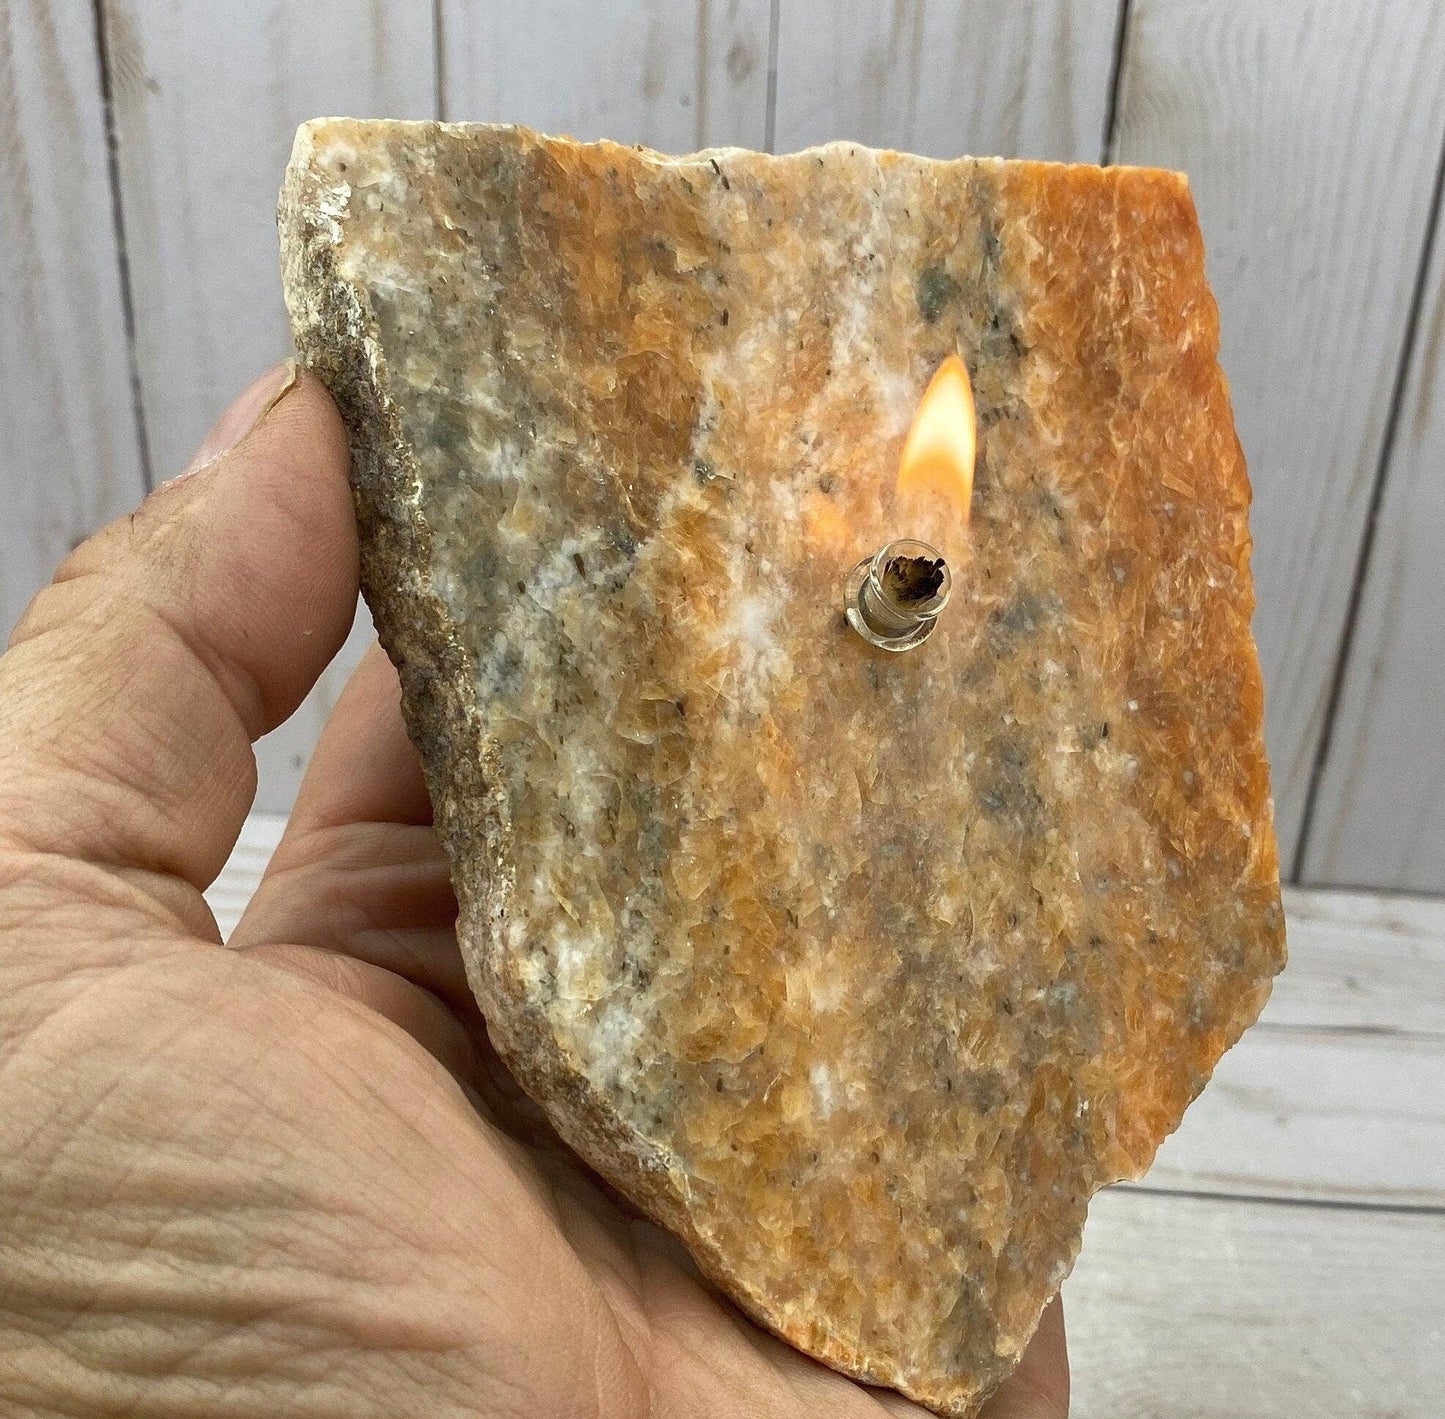 Rock oil candle kit - orchid calcite - RocciaRoba